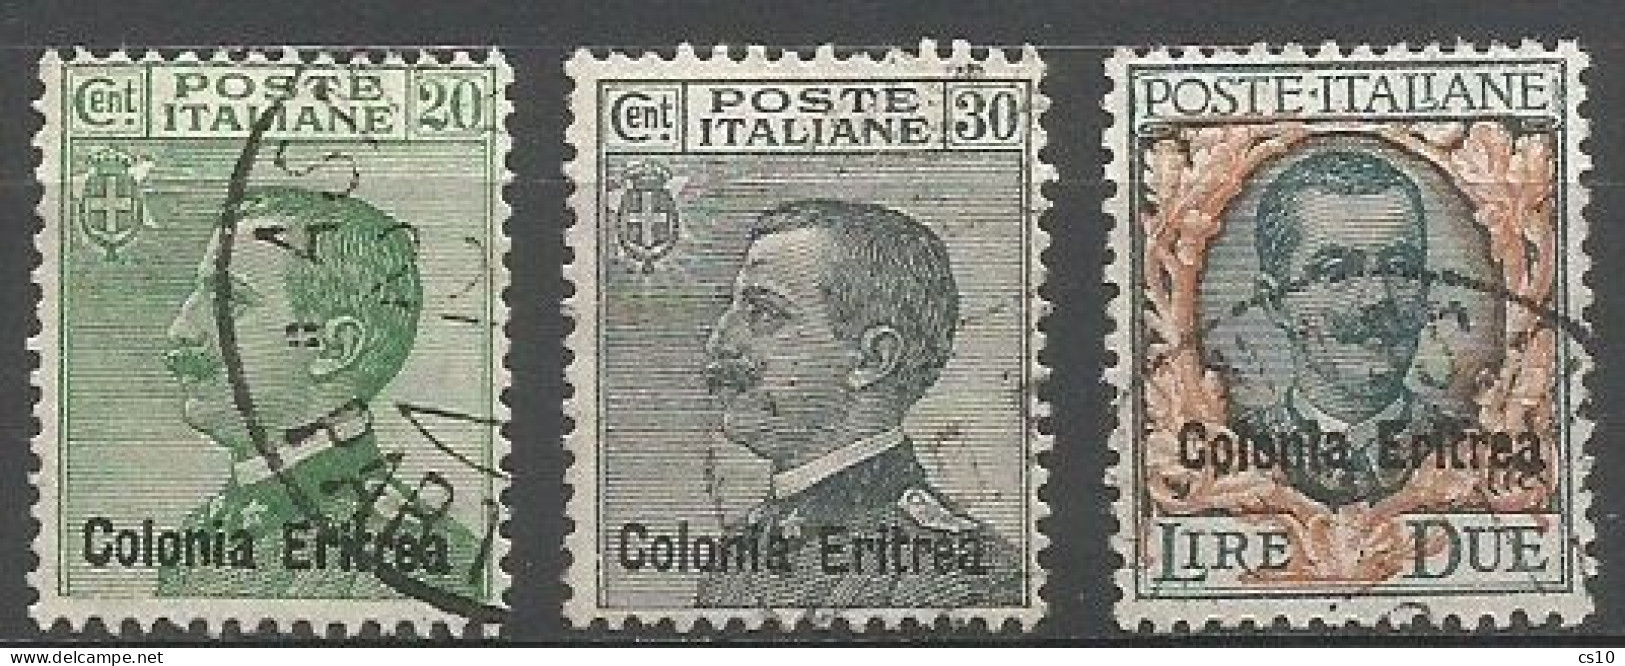 Eritrea Italy Colony - 1925 Ordinarie Michetti C.20 C.30 & Floreale Lire Due - Cpl 3v Set - VFU - Lotti E Collezioni